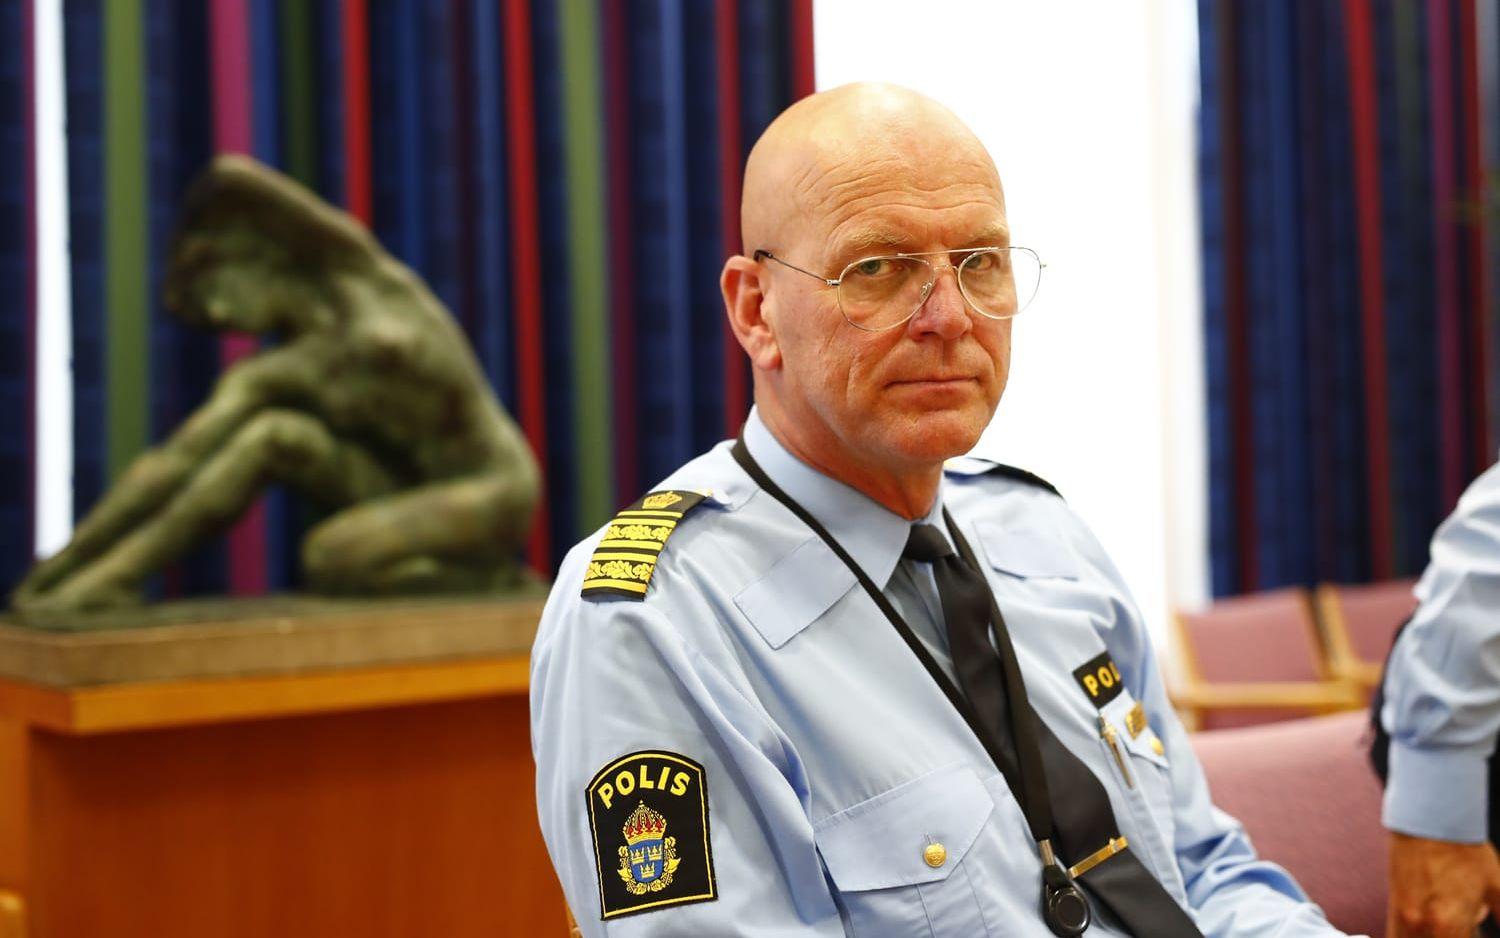 "Det är klart det är tungt, det är många sorgsna miner när vi förlorar en kollega och god vän till många av oss", säger Erik Nord, polischef i Göteborg.